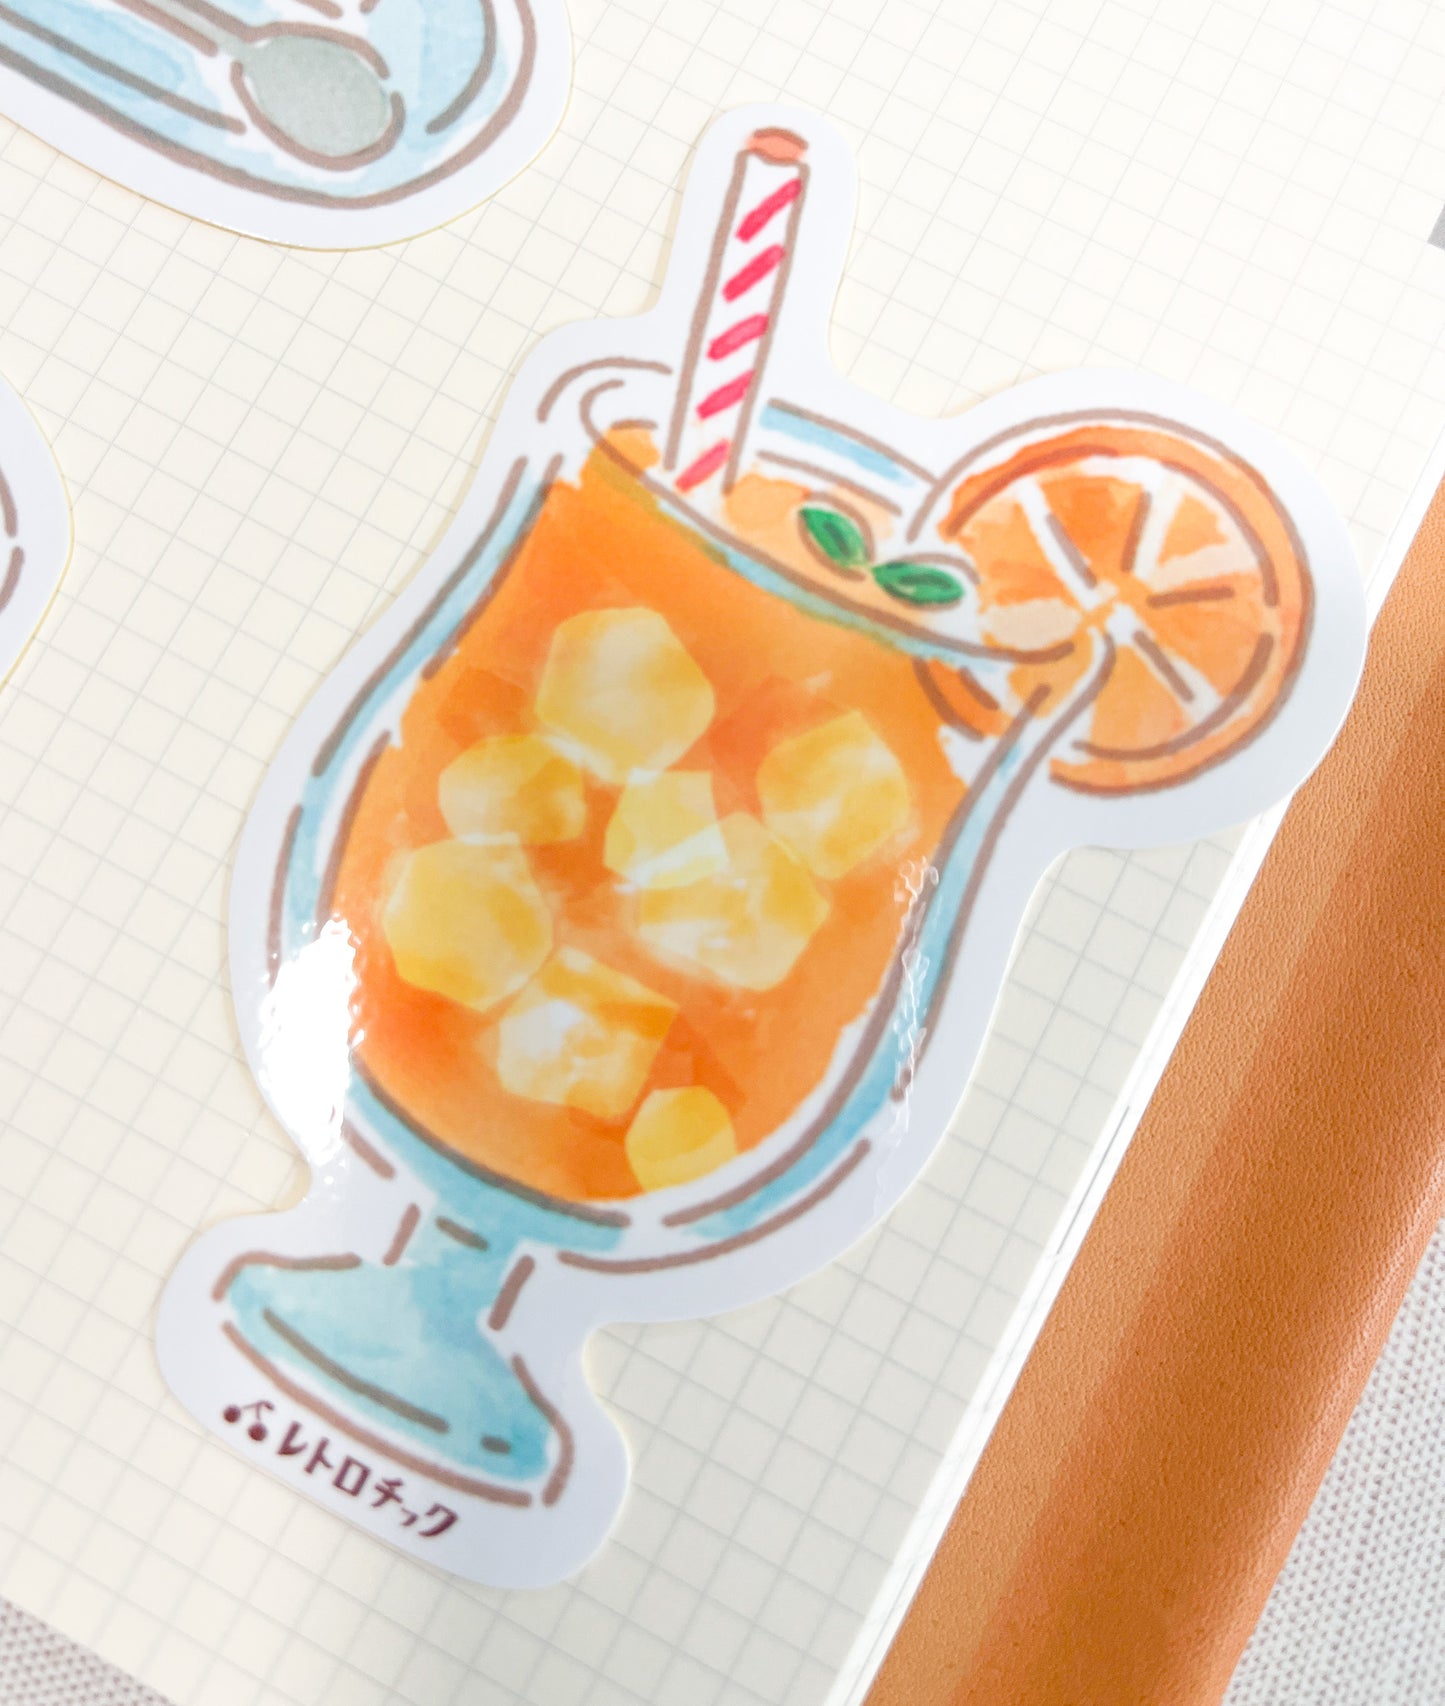 FUKUKAWA Dessert Sticker Die Cut | 4 designs